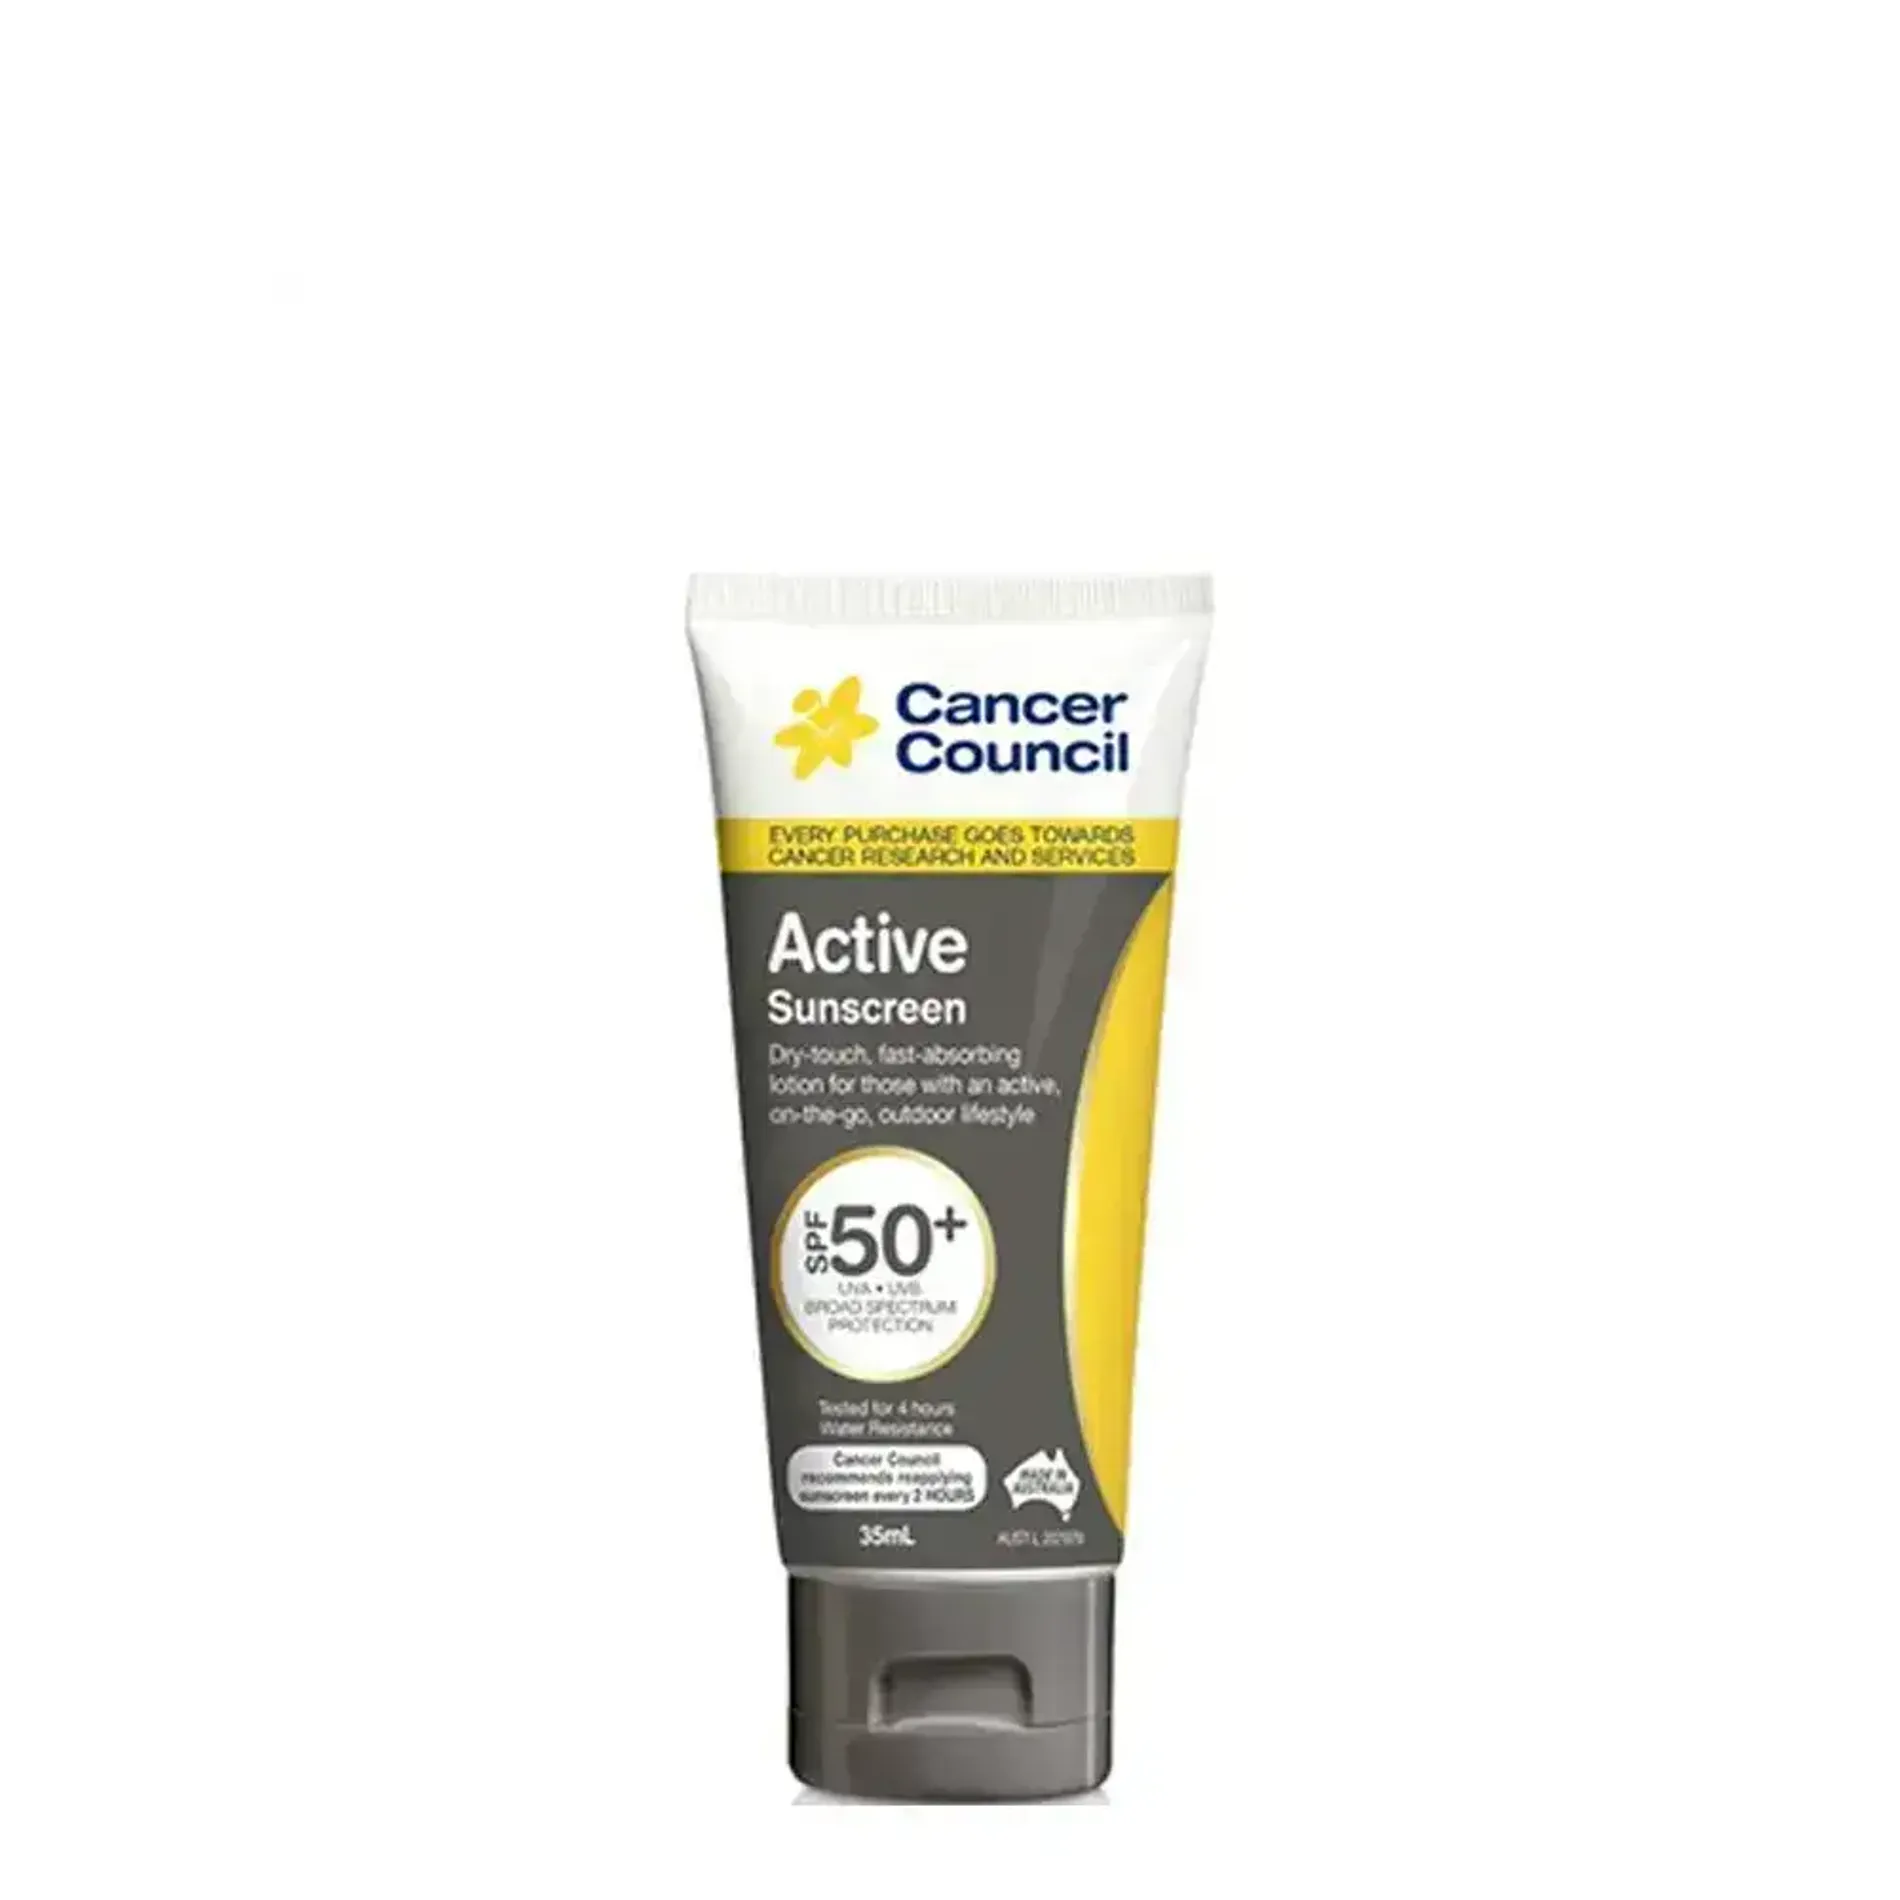 kem-chong-nang-cancer-council-active-sunscreen-grey-spf50-3